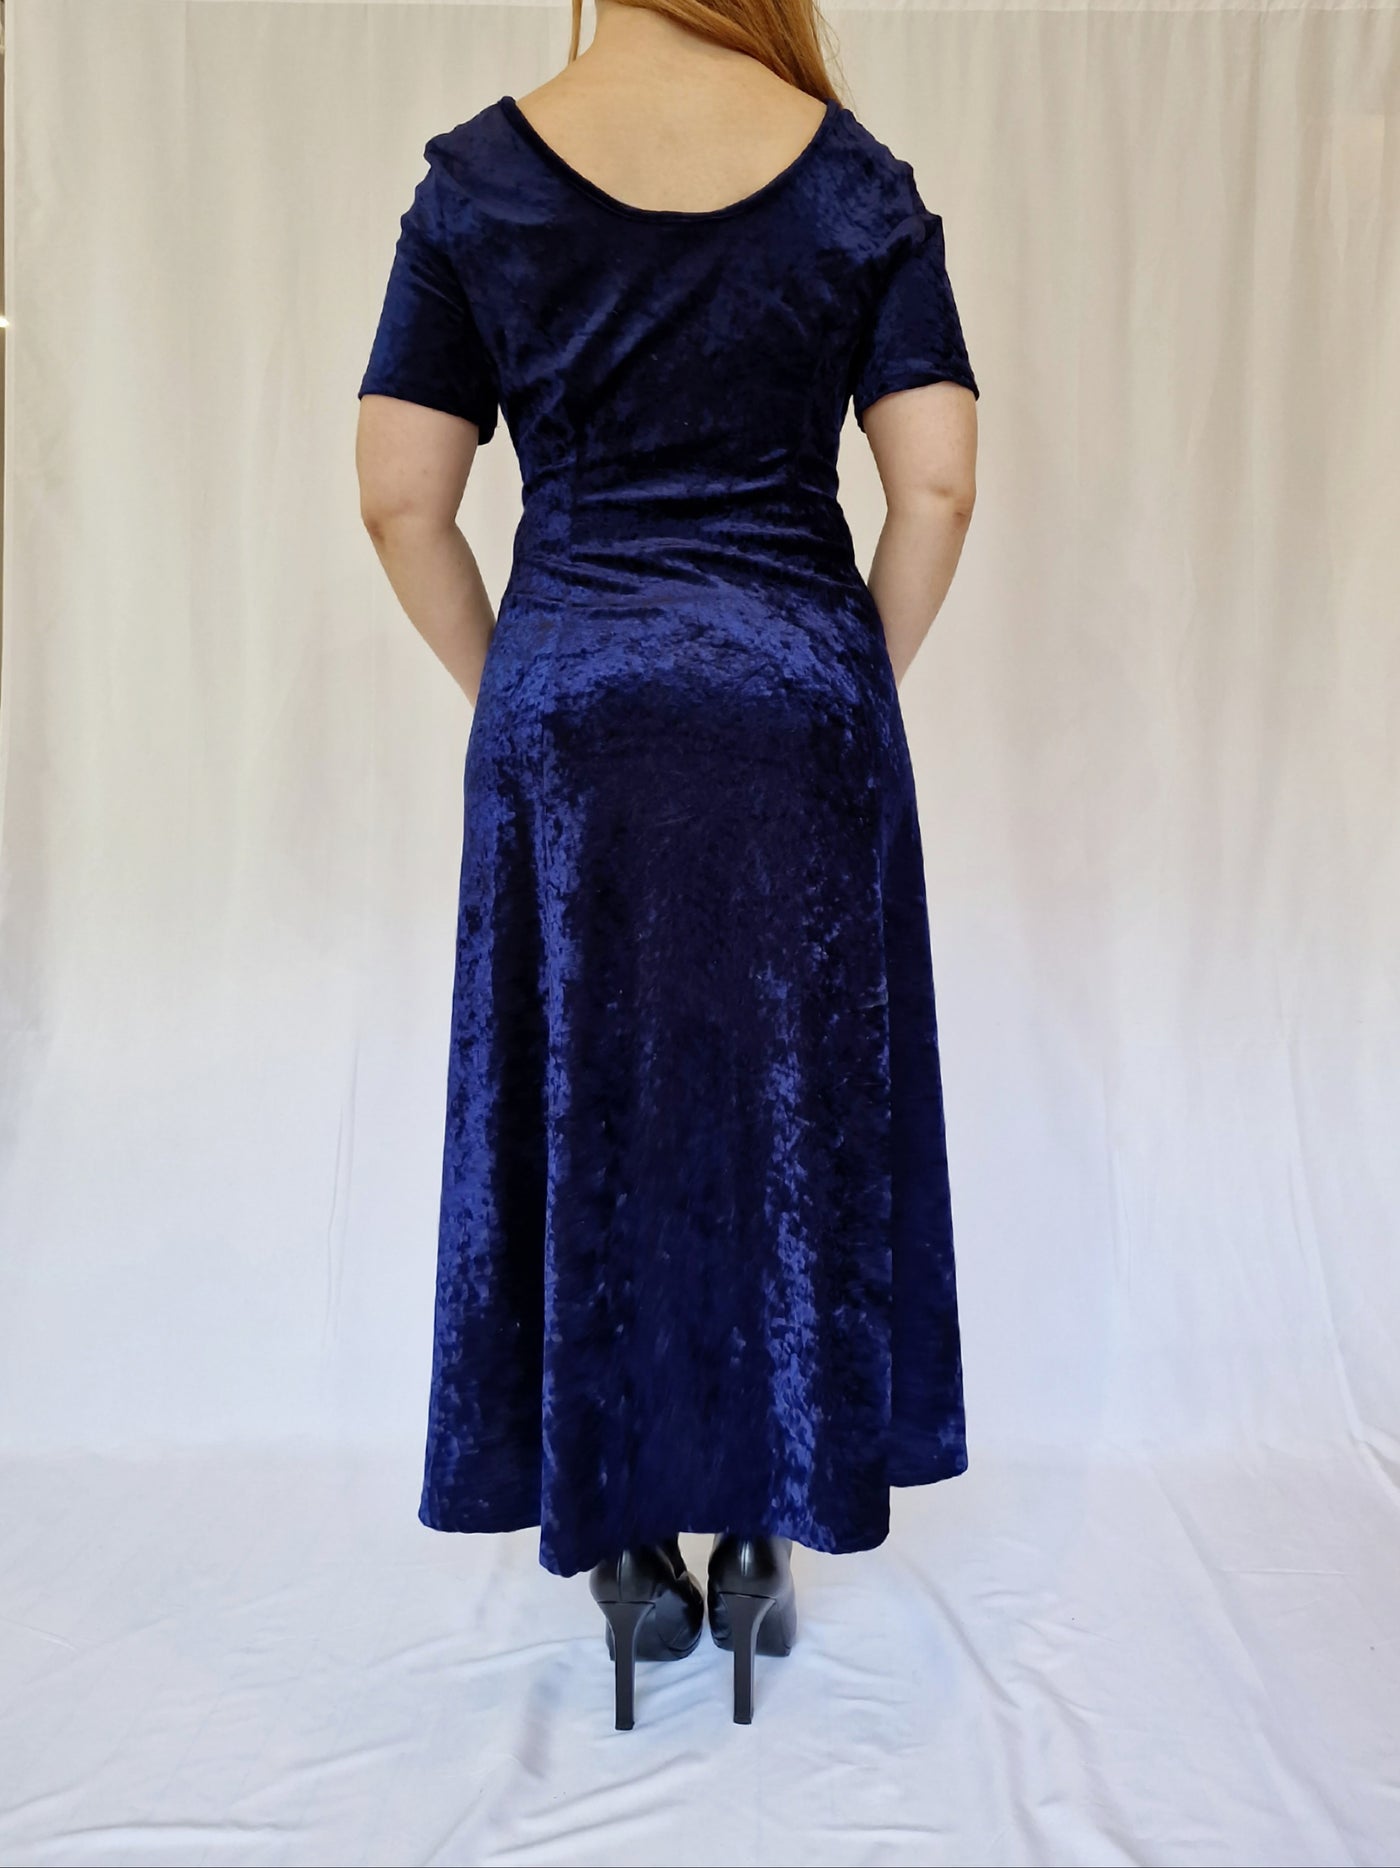 Vintage 90s Navy Blue Crushed Velvet Maxi Dress - L